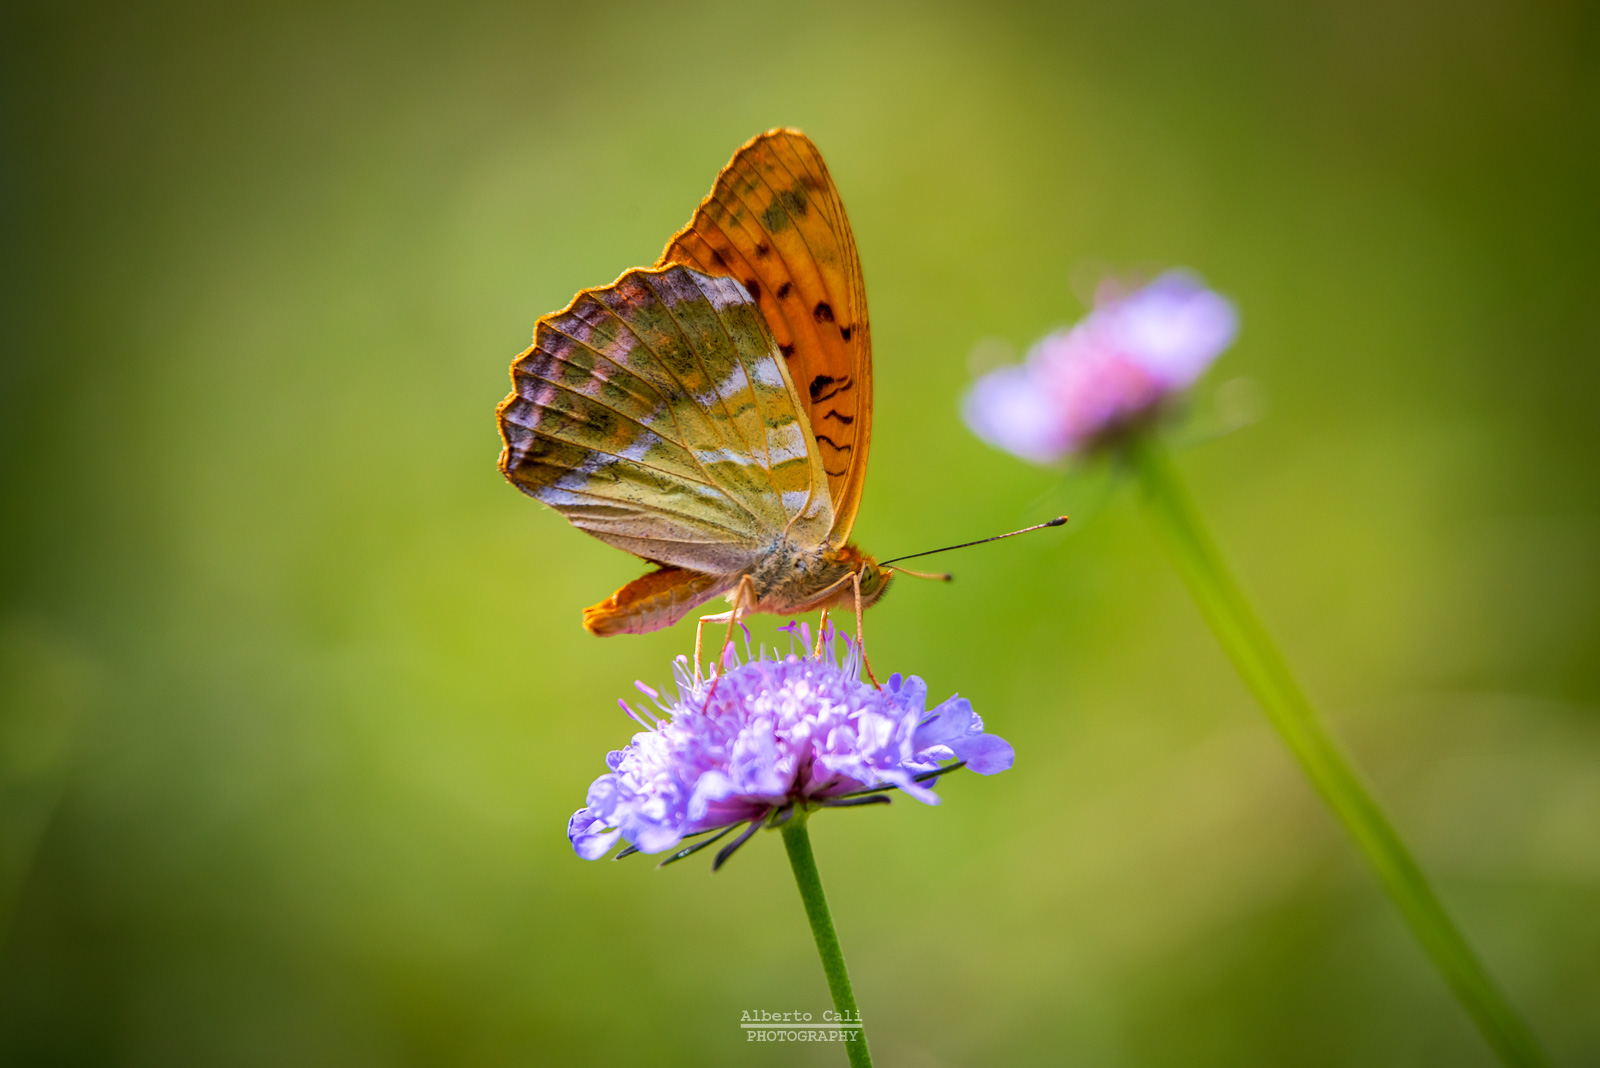 Butterfly on Flower...